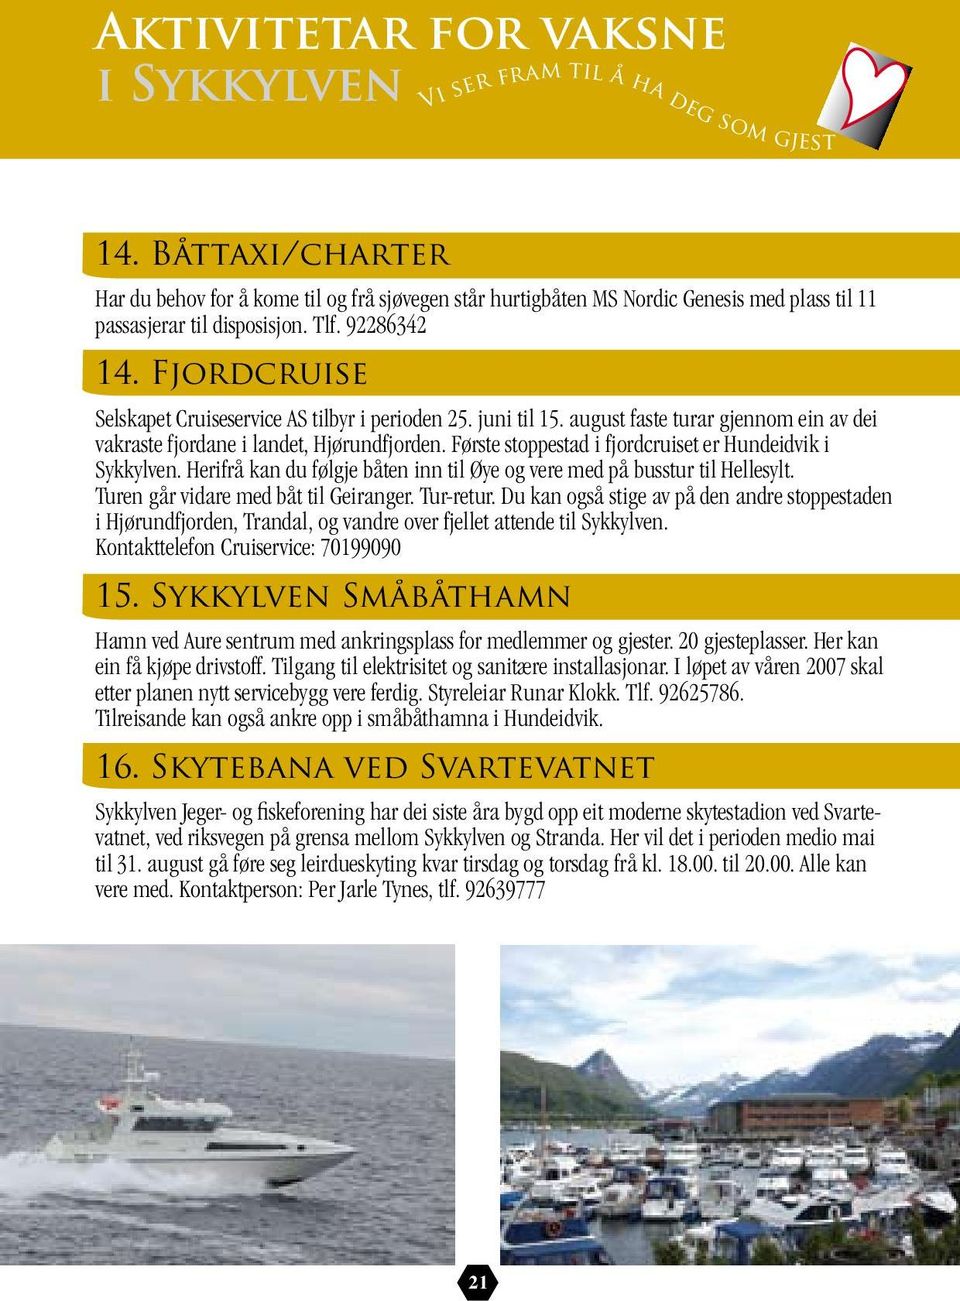 Fjordcruise Selskapet Cruiseservice AS tilbyr i perioden 25. juni til 15. august faste turar gjennom ein av dei vakraste fjordane i landet, Hjørundfjorden.